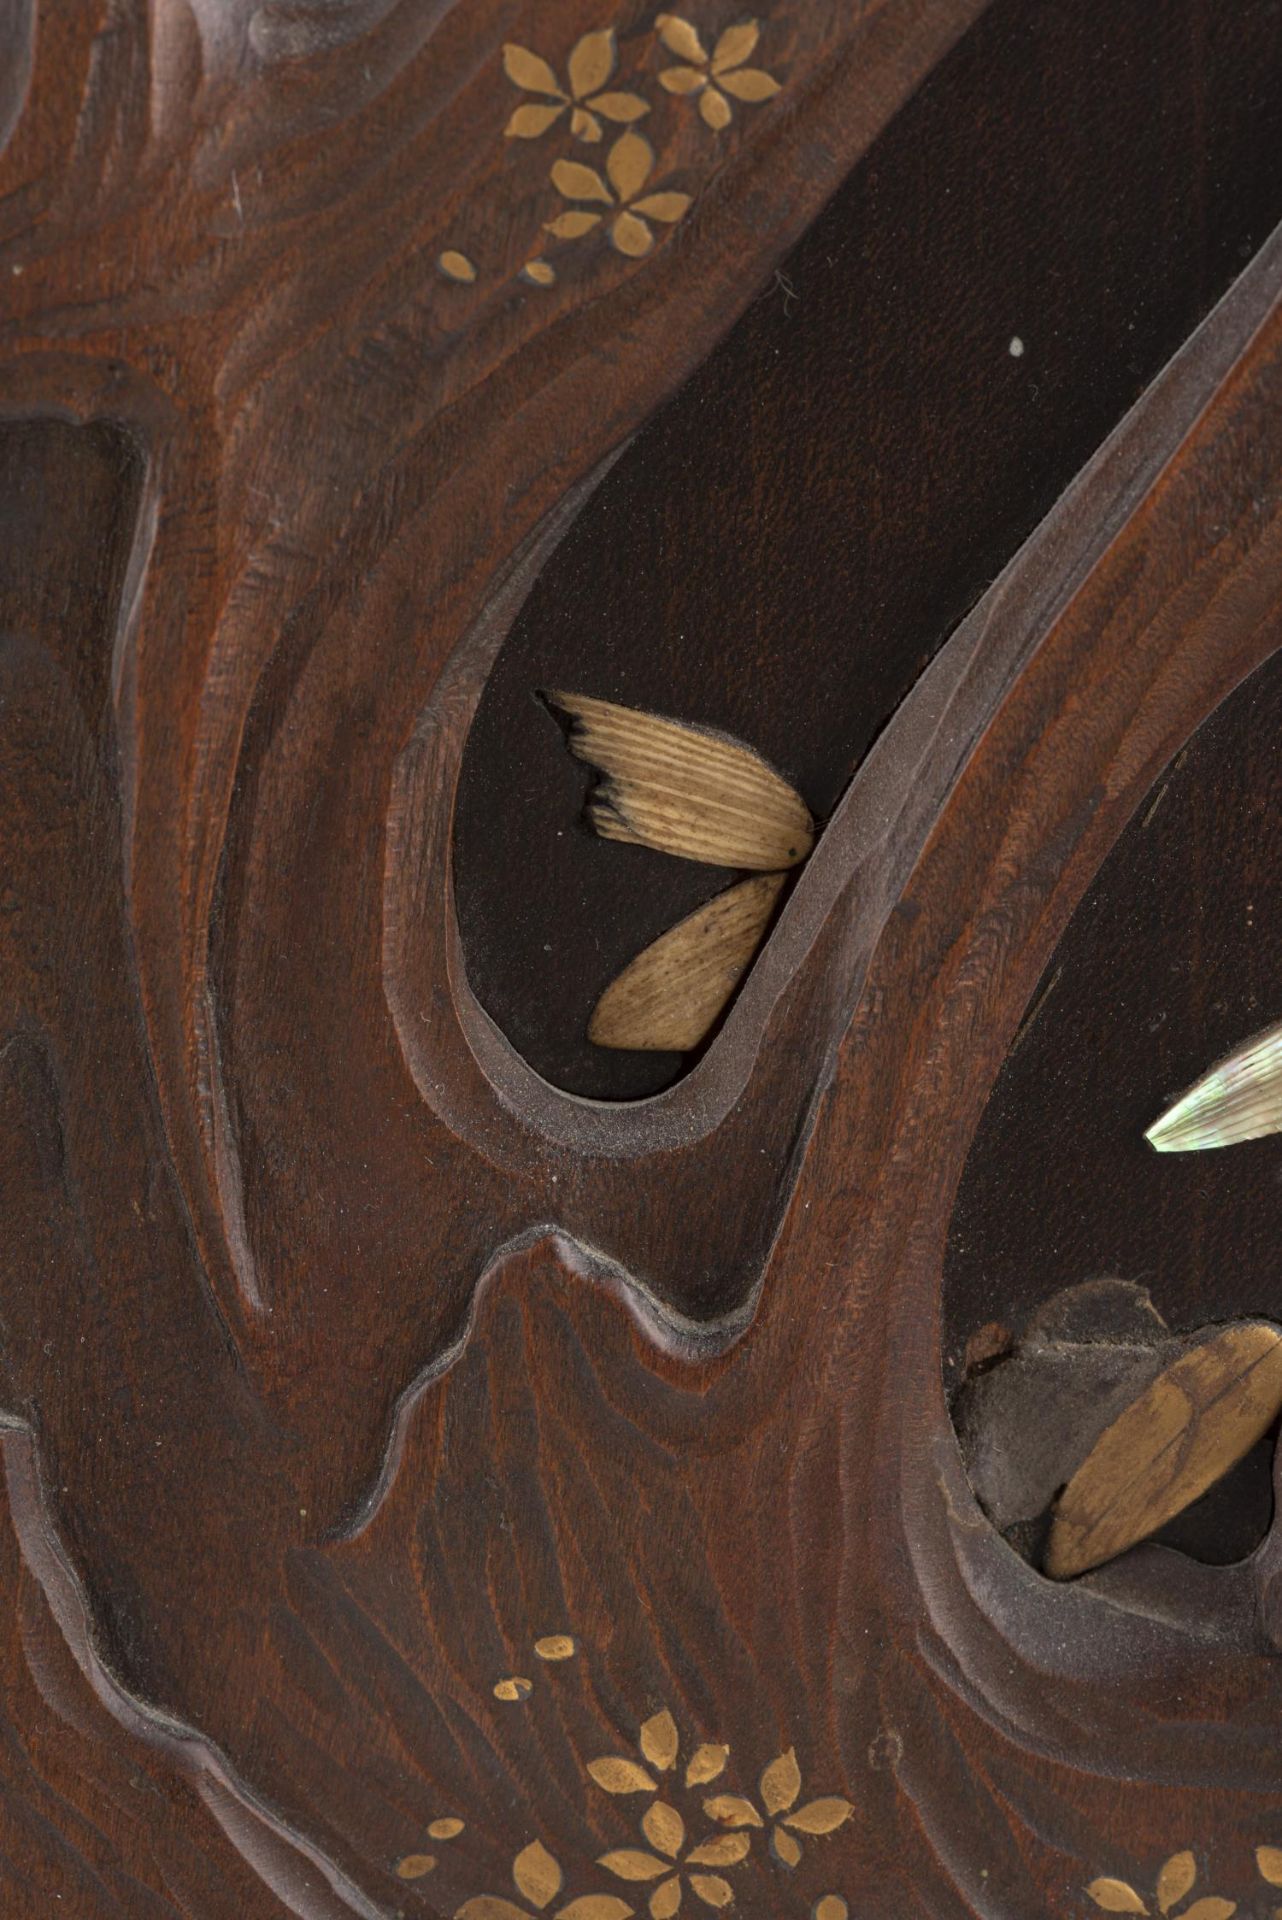 JAPON, Panneau en bois avec incrustations d'ivoire, nacre, laque d'or et os... - Image 5 of 6